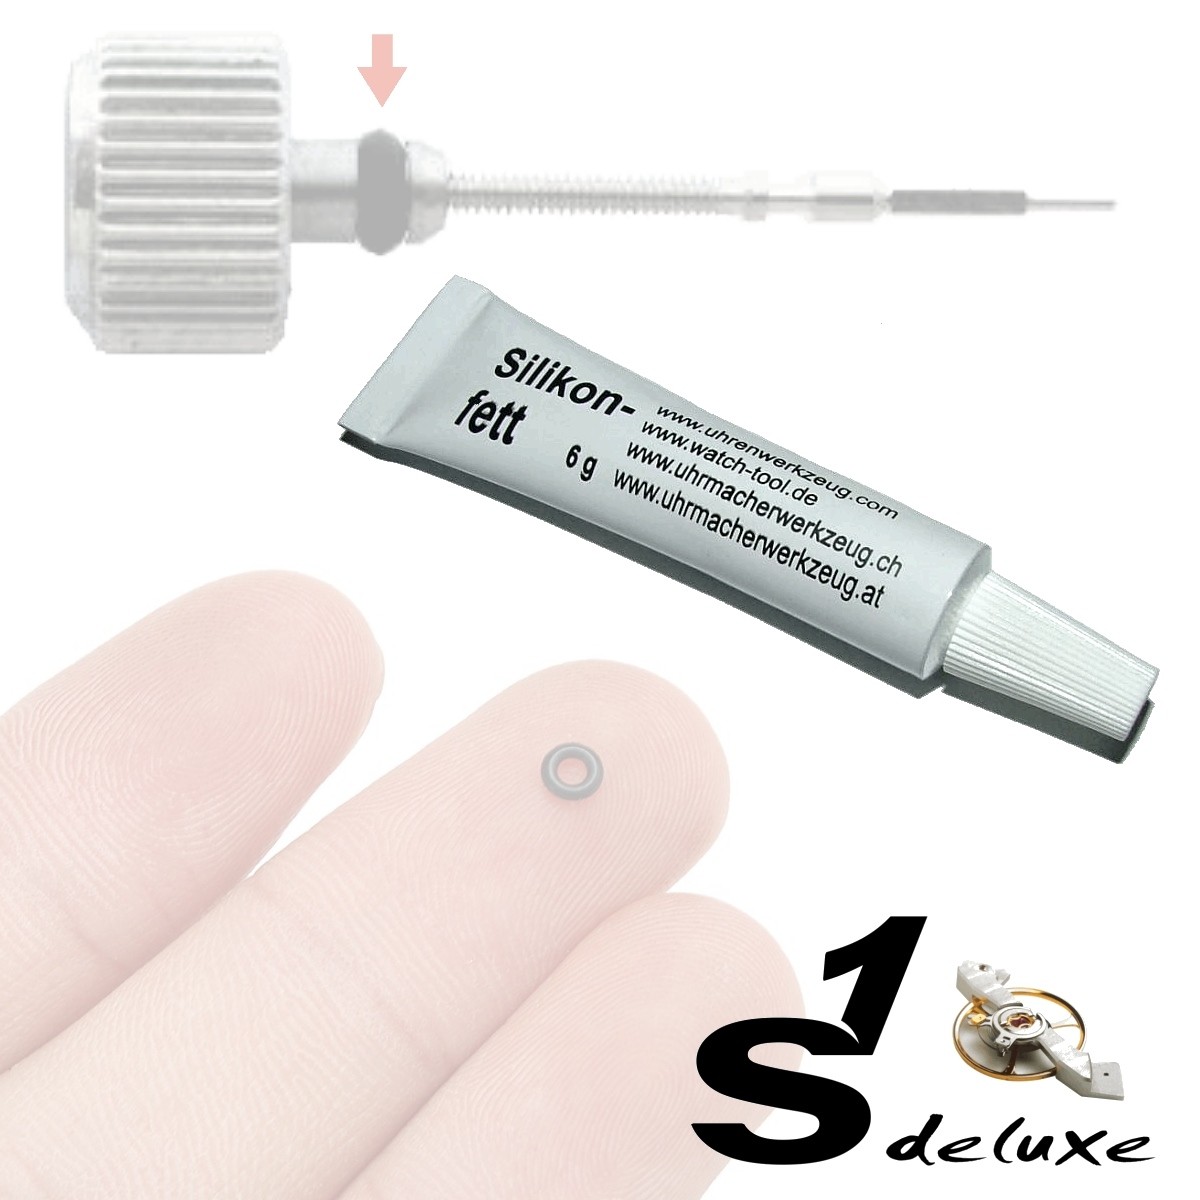 Graisse silicone DELUXE pour joints montres - Expert de matériel